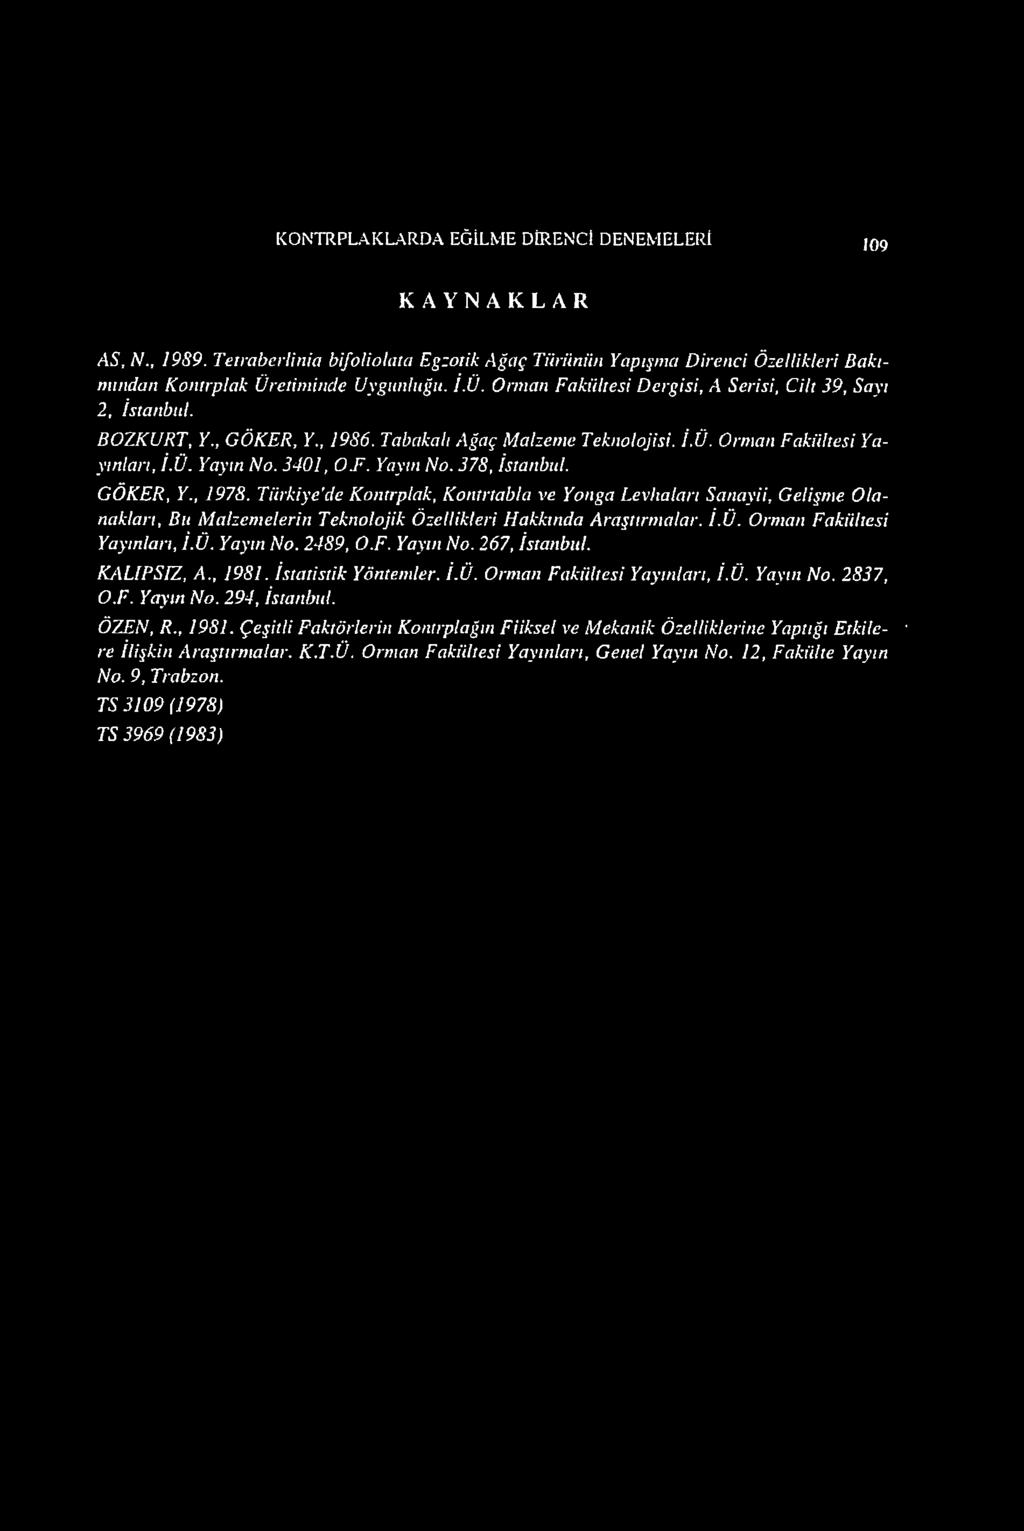 3401, O.F. Yayın No. 378, İstanbul. GÖKER, Y., 1978. Türkiye'de Kontrplak, Kontrtabla ve Yonga Levhaları Sanayii, Gelişme Olanakları, Bu Malzemelerin Teknolojik Özellikleri Hakkında Araştırmalar. İ.Ü.